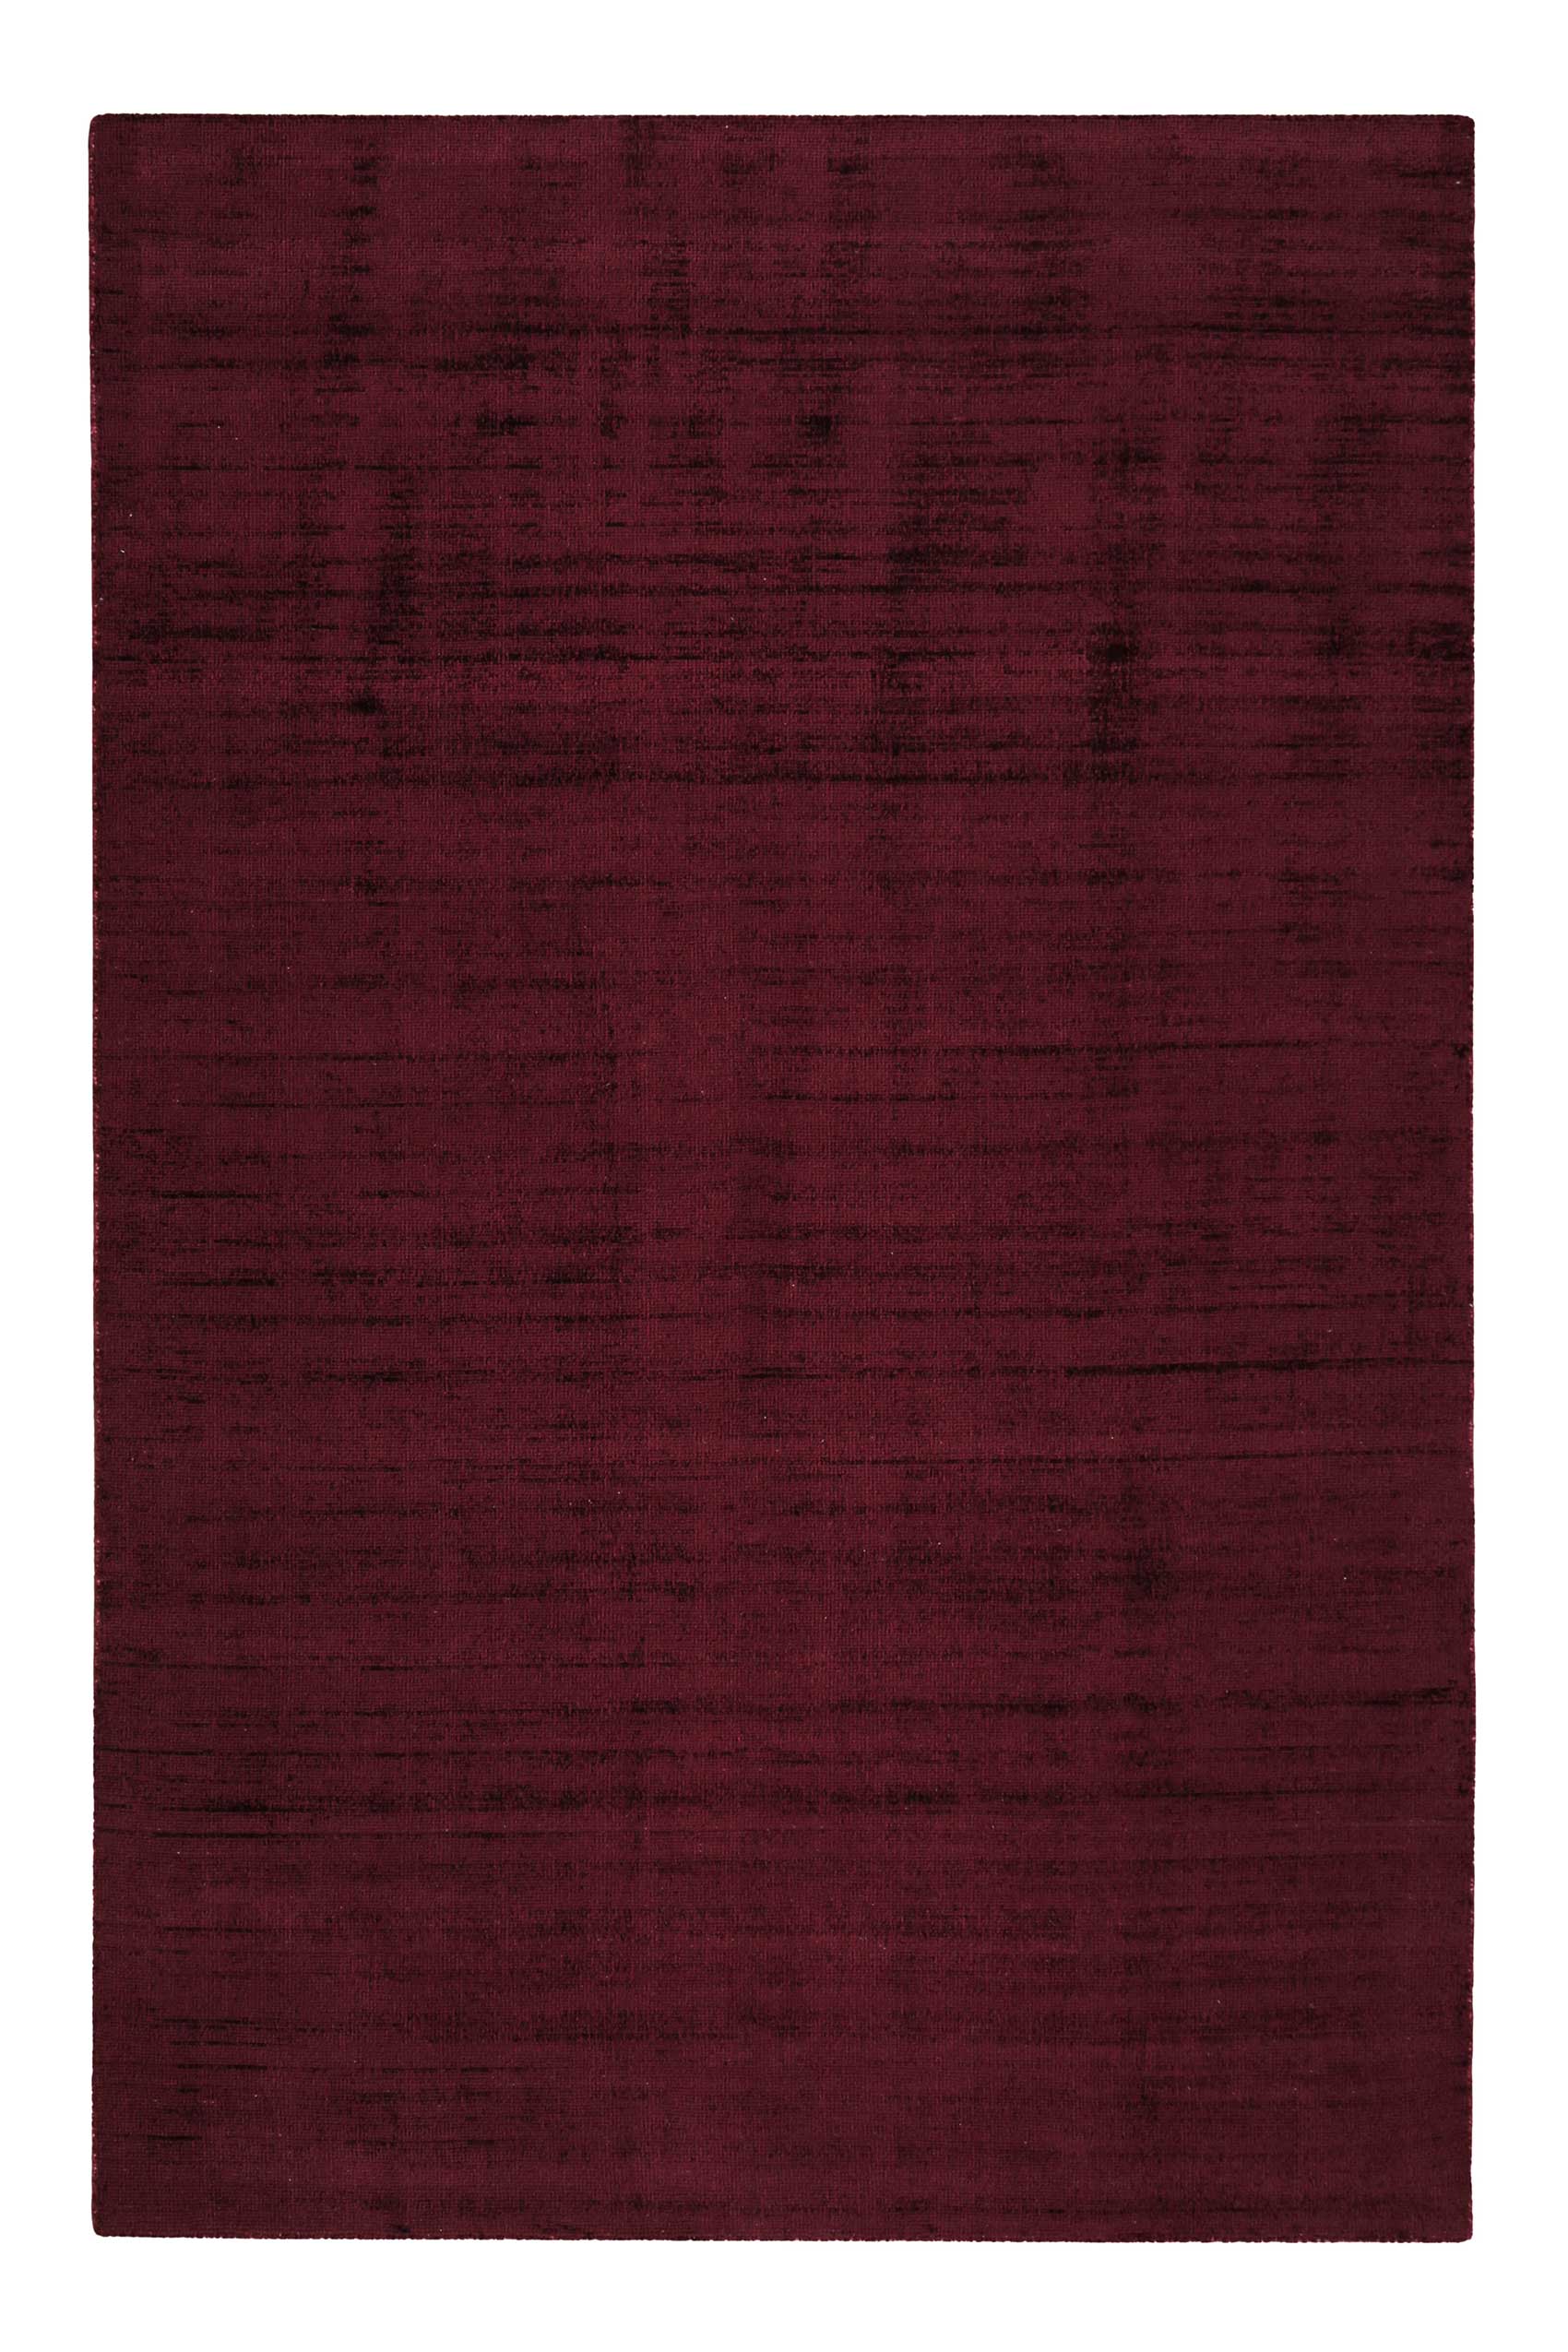 Esprit Kurzflor Teppich Bordeaux Rot » Gil « - Ansicht 1